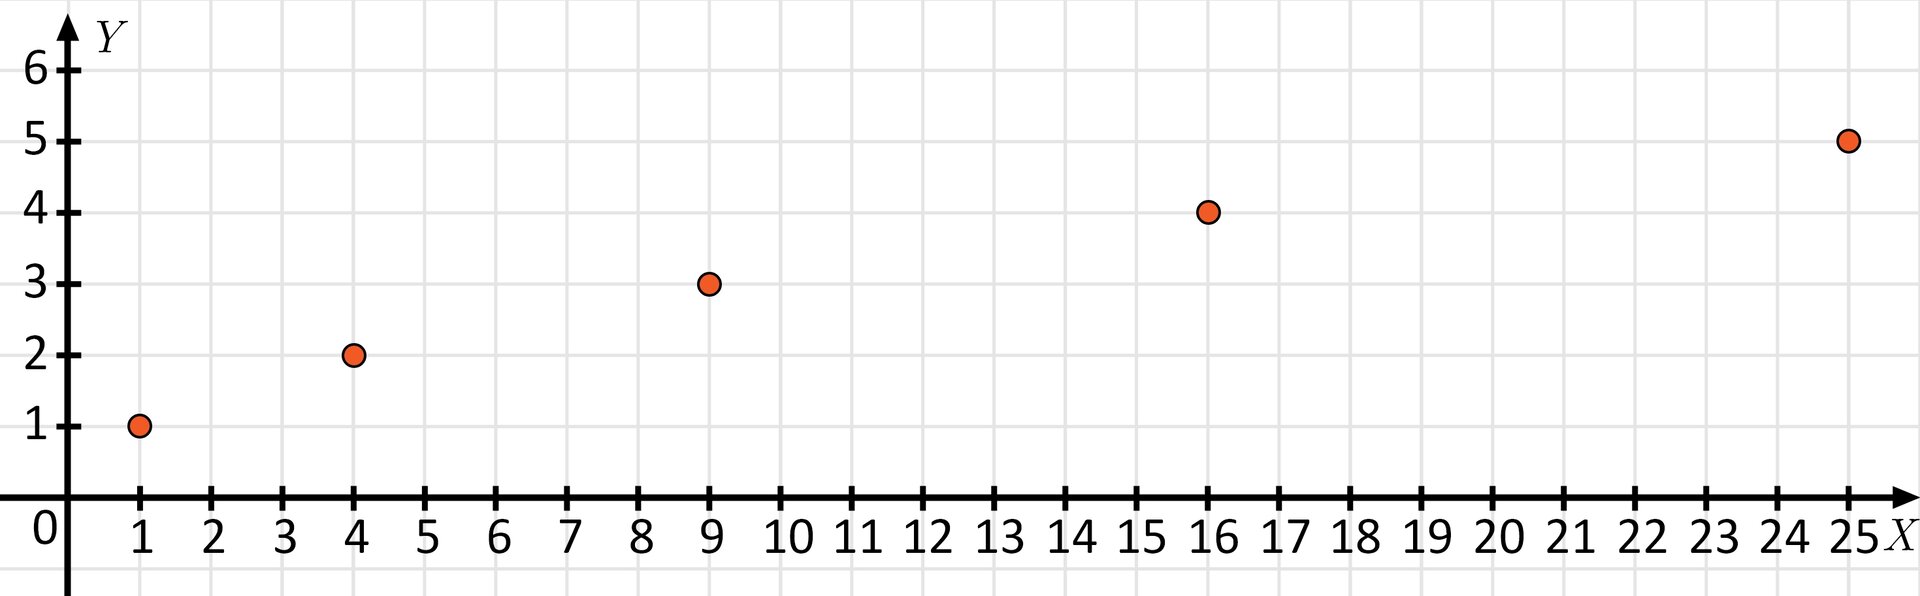 Ilustracja przedstawia układ współrzędnych z poziomą osią X od zera do dwudziestu pięciu oraz z pionową osią Y od zera do sześciu. Na płaszczyźnie narysowanych jest pięć zamalowanych punktów o współrzędnych kolejno: 1;1, 4;2, 9;3, 16;4, 25;5.